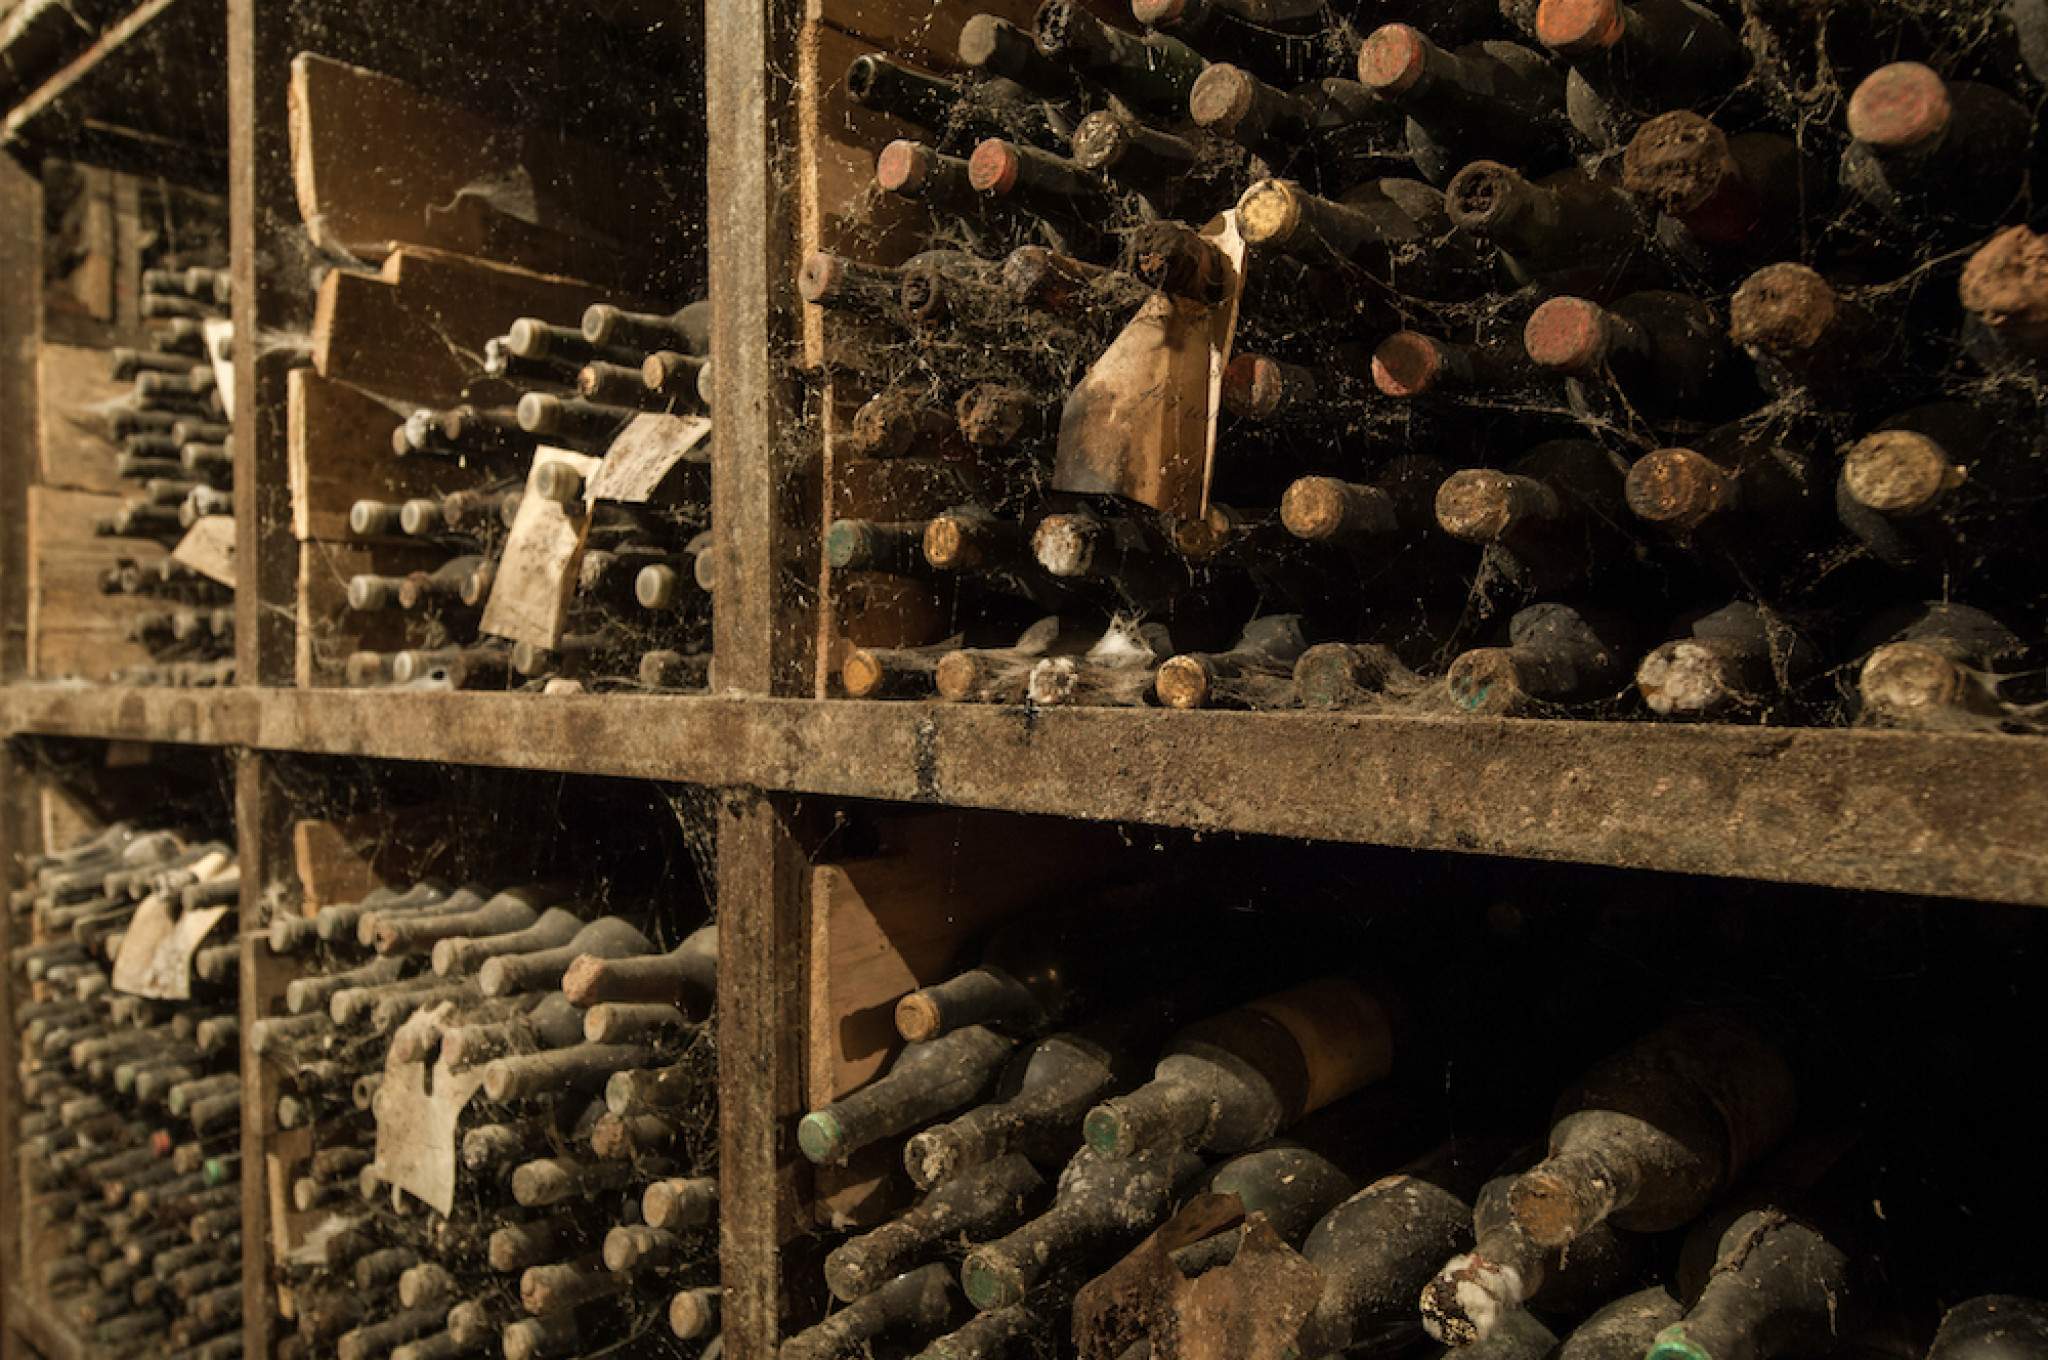 lot-old-wine-bottles-web-wine-cellar-shelves.jpg